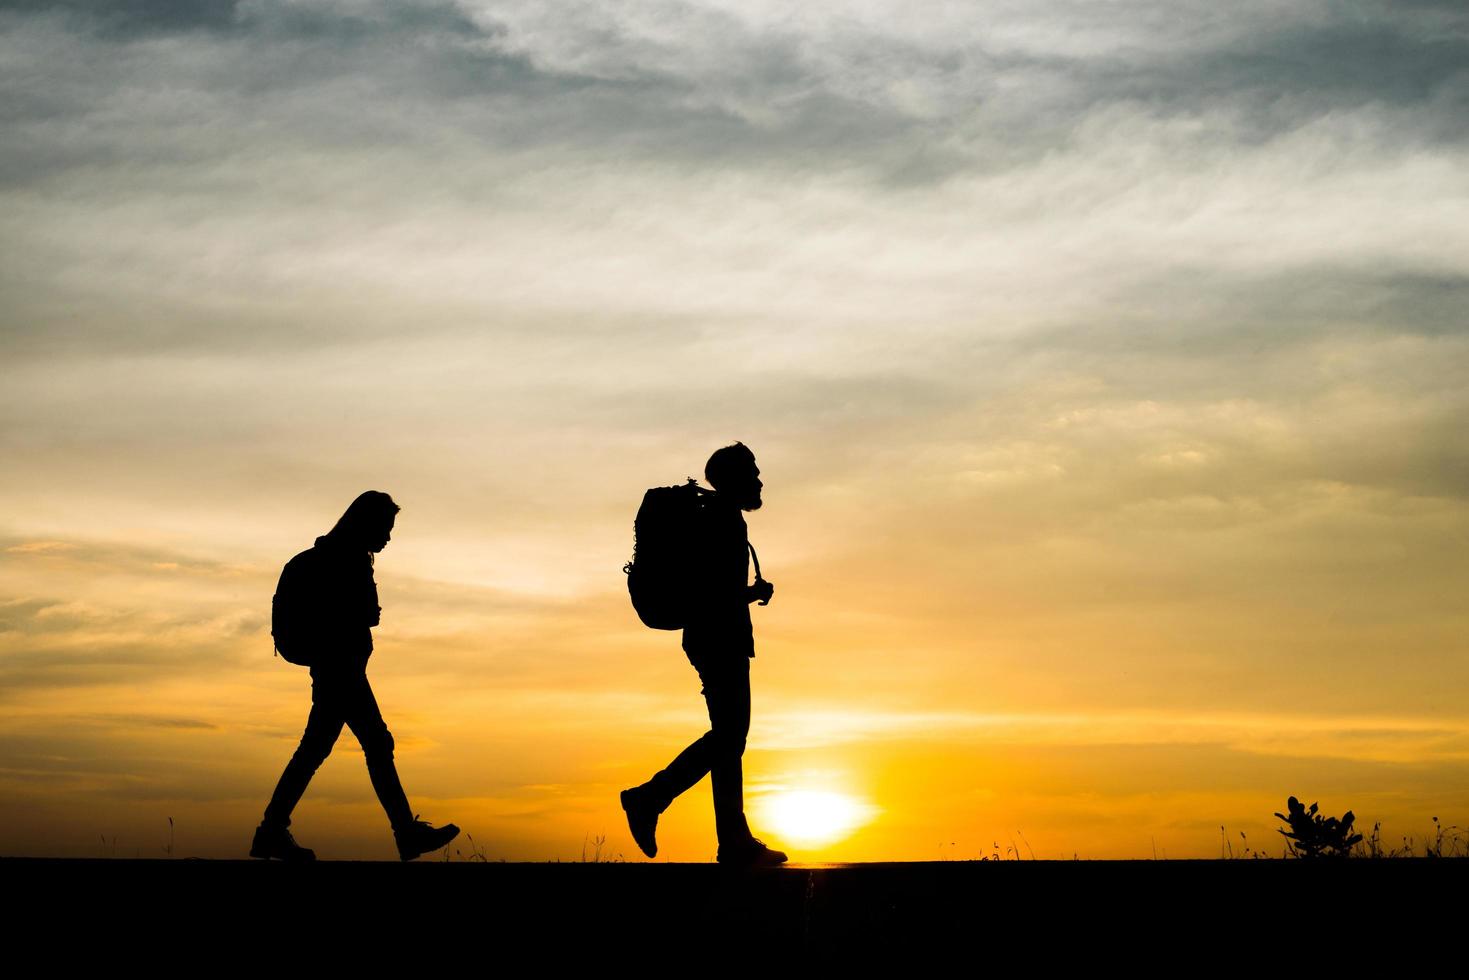 silhuetter av två vandrare med ryggsäckar som njuter av solnedgången foto